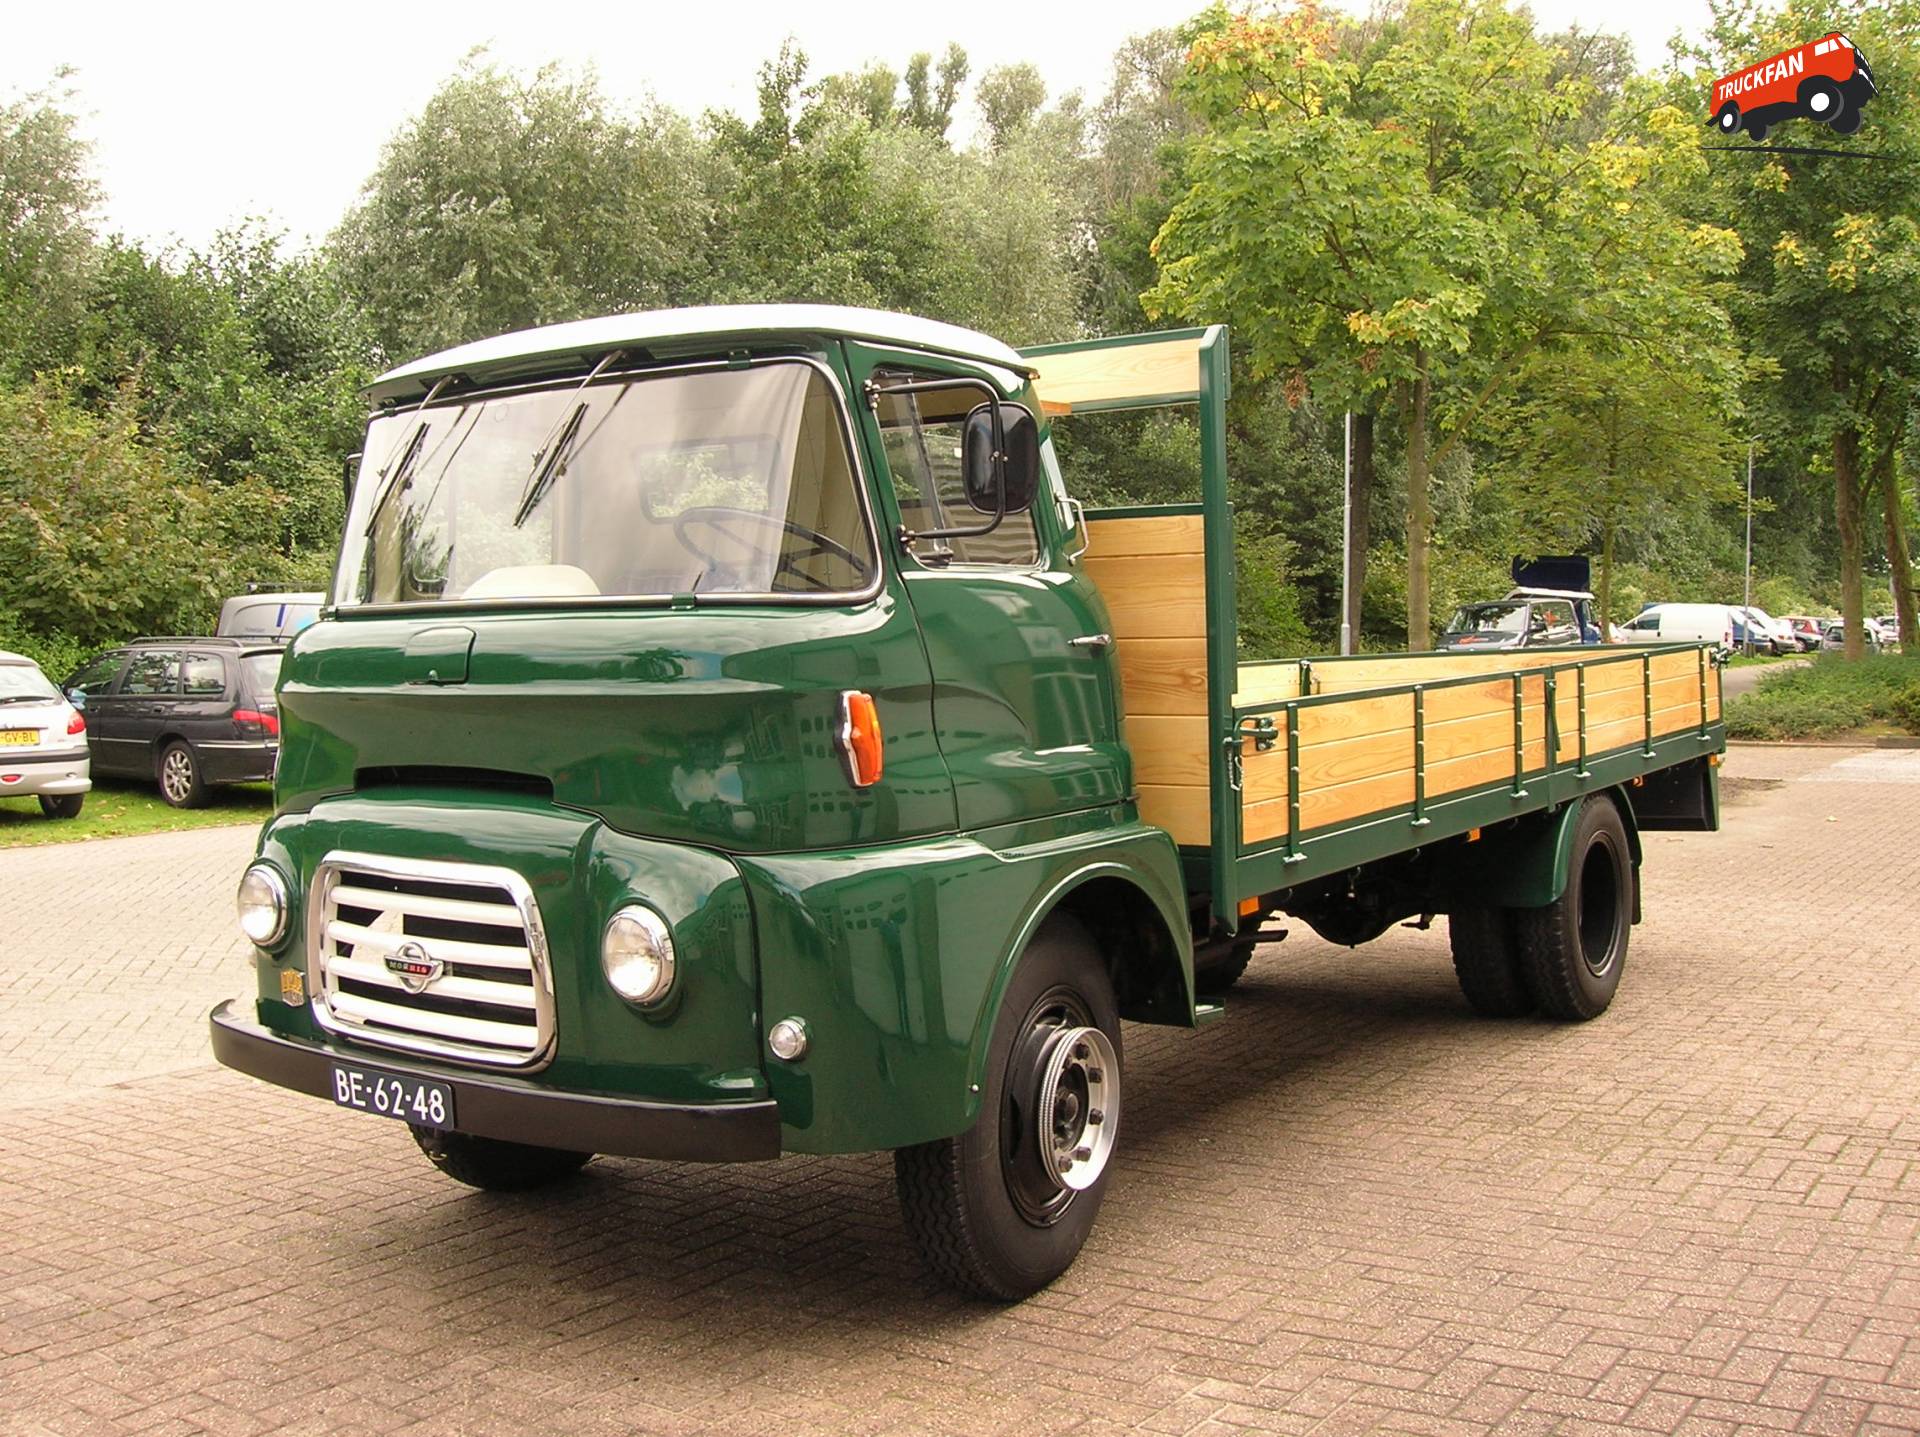  Gerestaureerde Morris FFK-140 uit 1963.  Gerestaureerd door Jan Timmerman in Hoevelaken.  Voor...